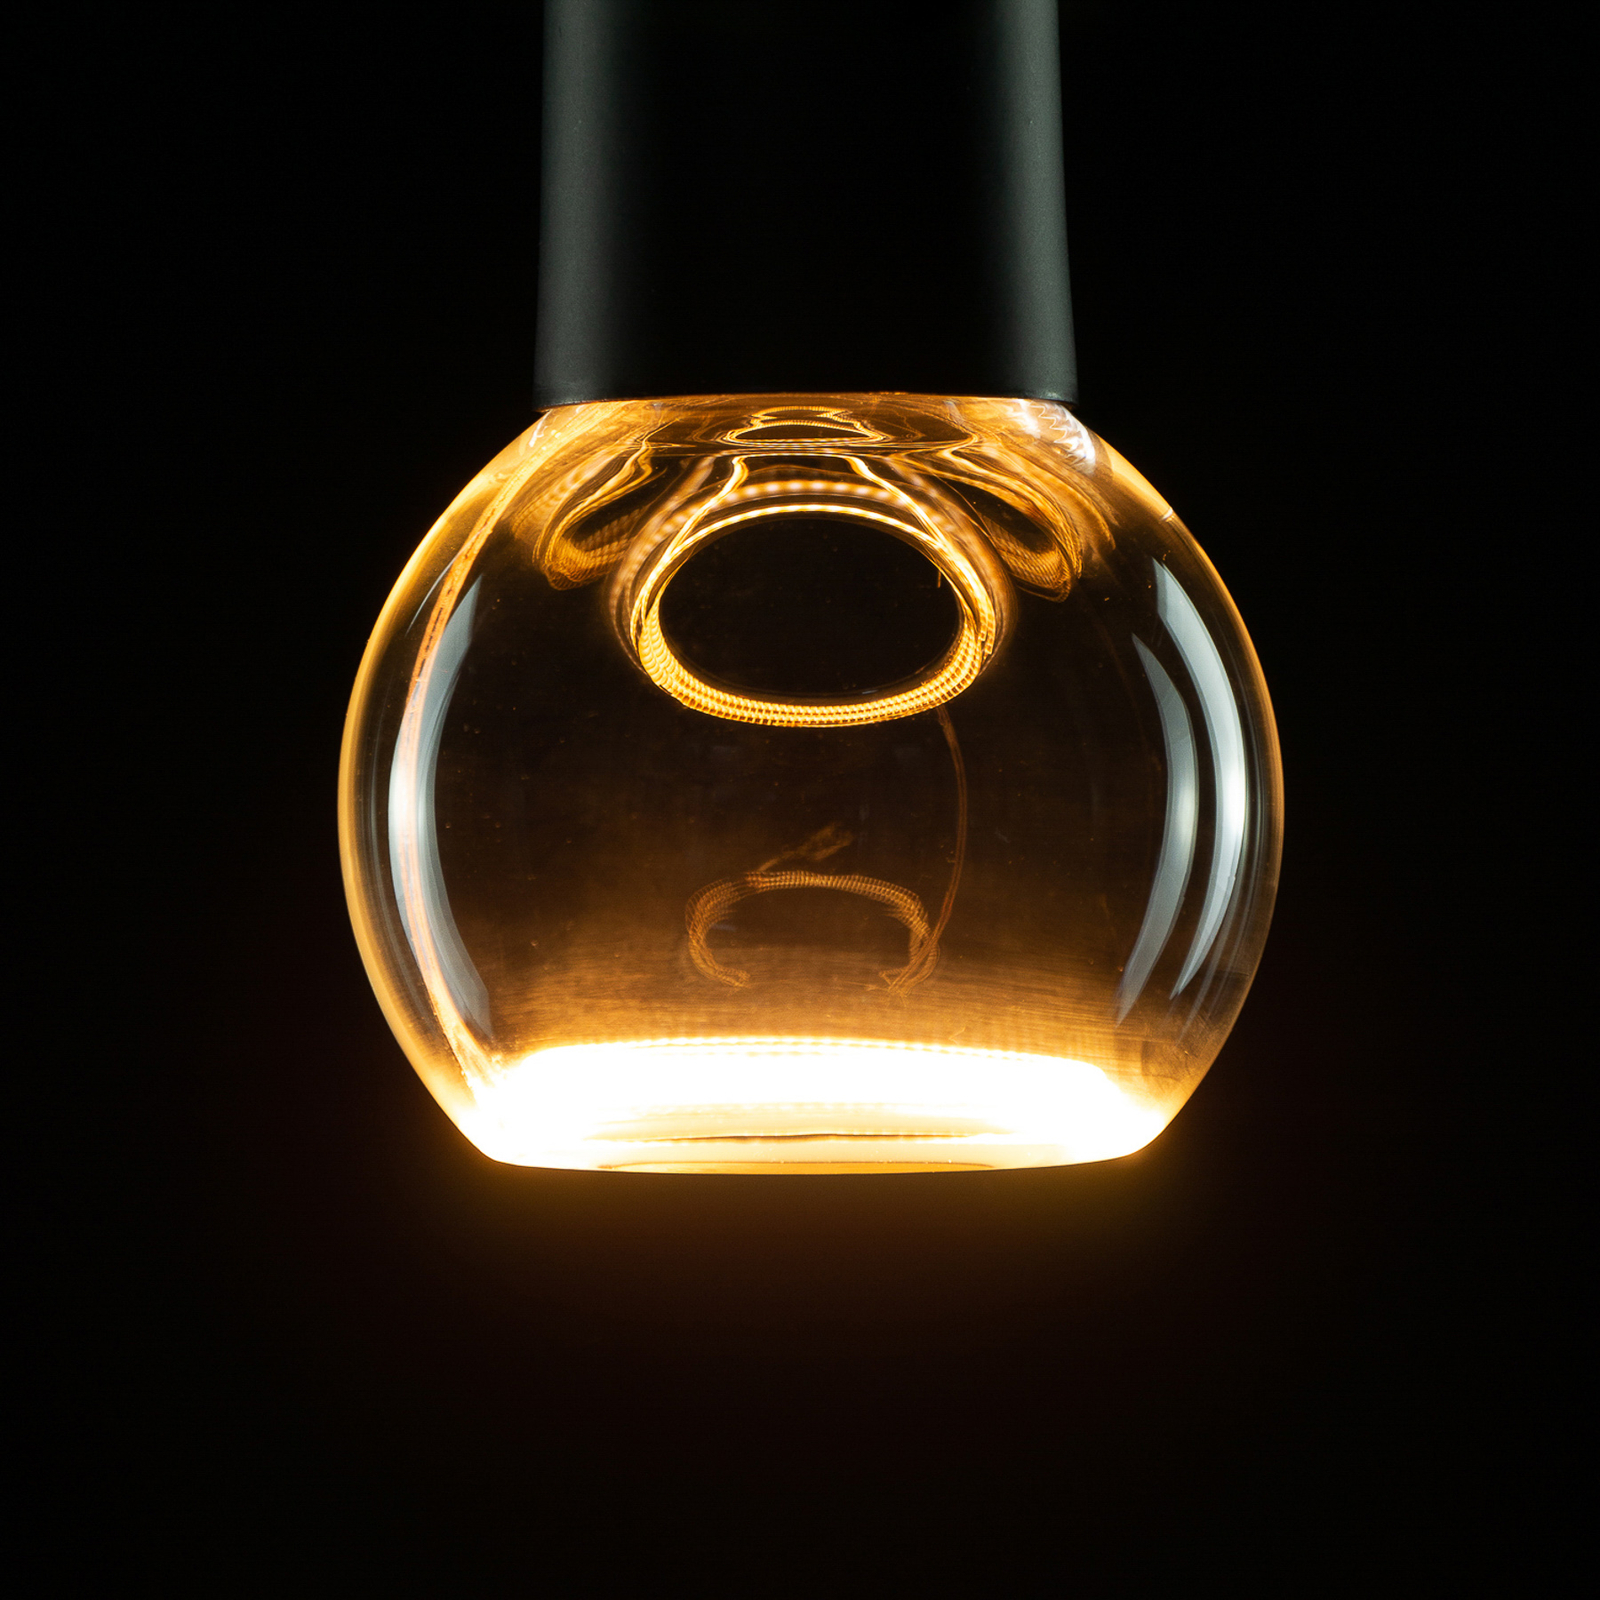 SEGULA LED-Floating-Globelampe G80 E27 4W klar